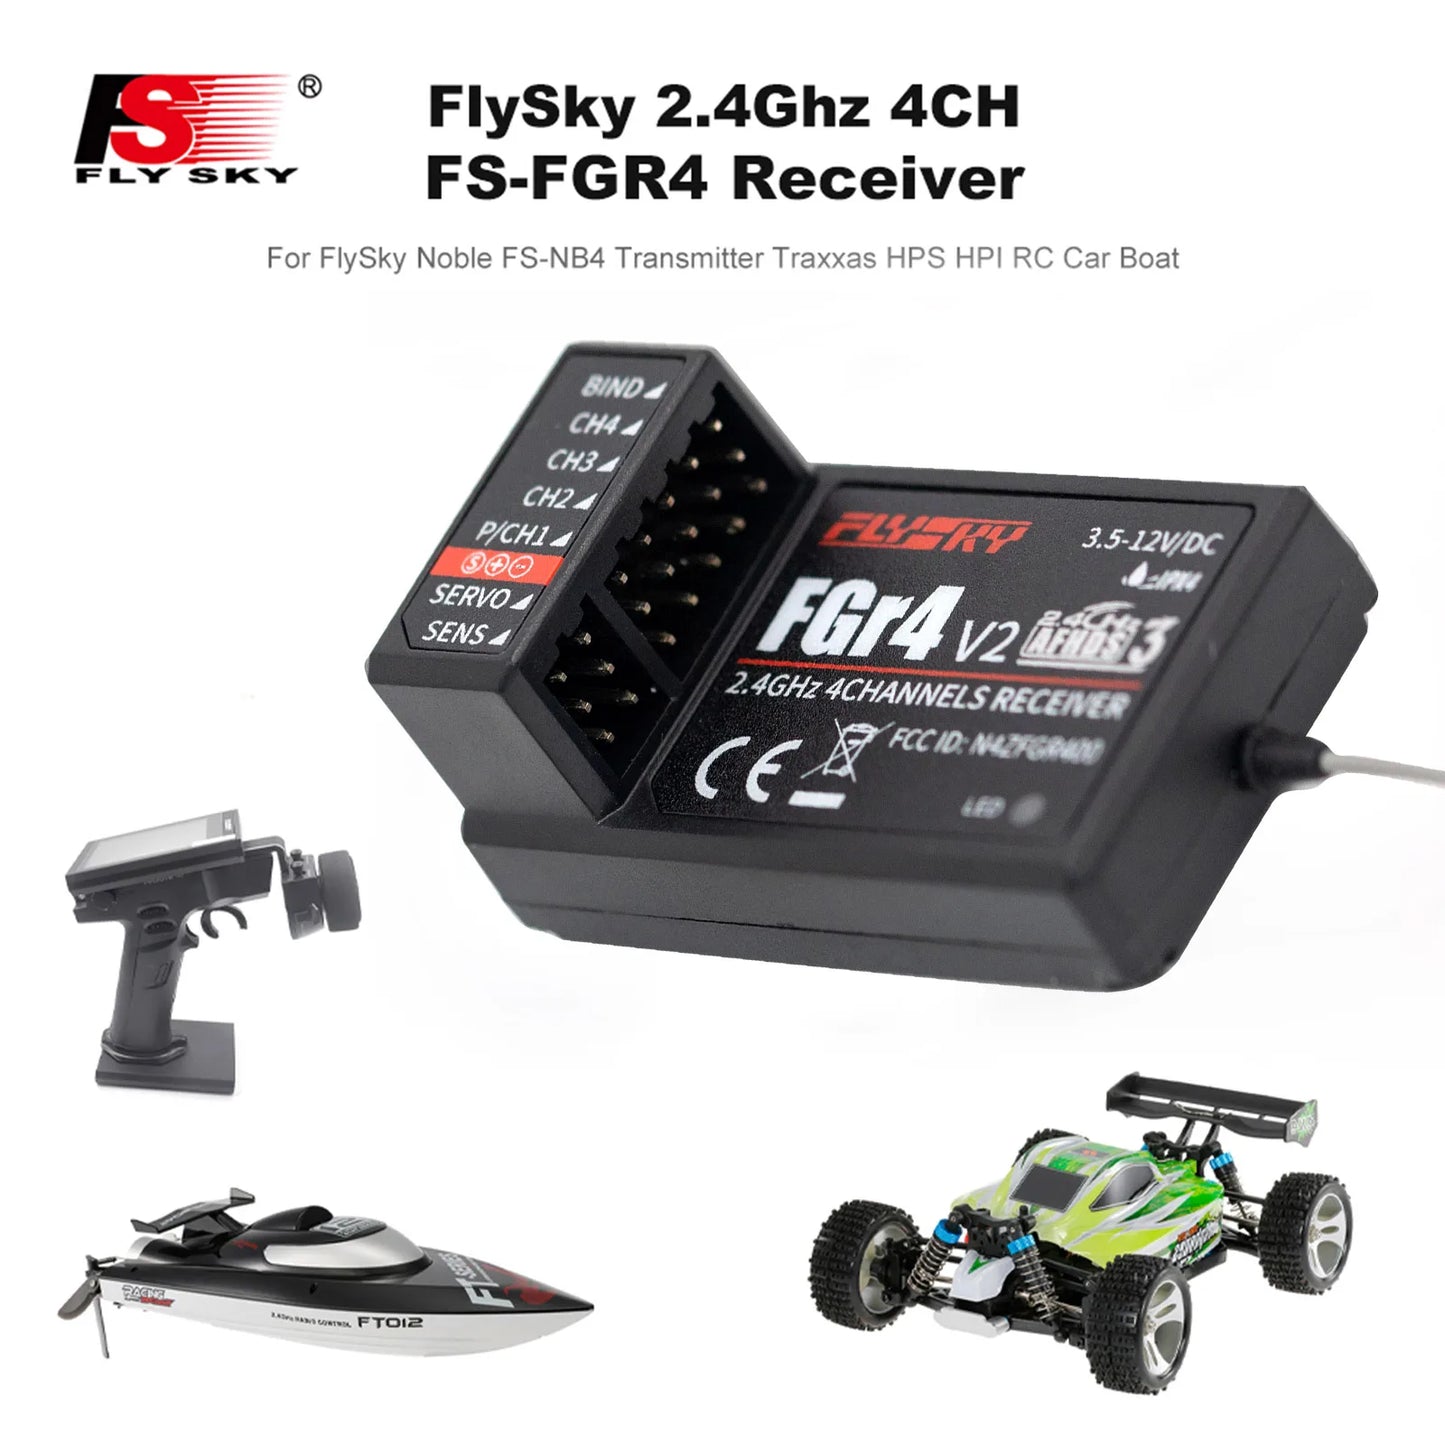 5 FlySky 2.4Ghz ACH Fly Sky FS-FGR4